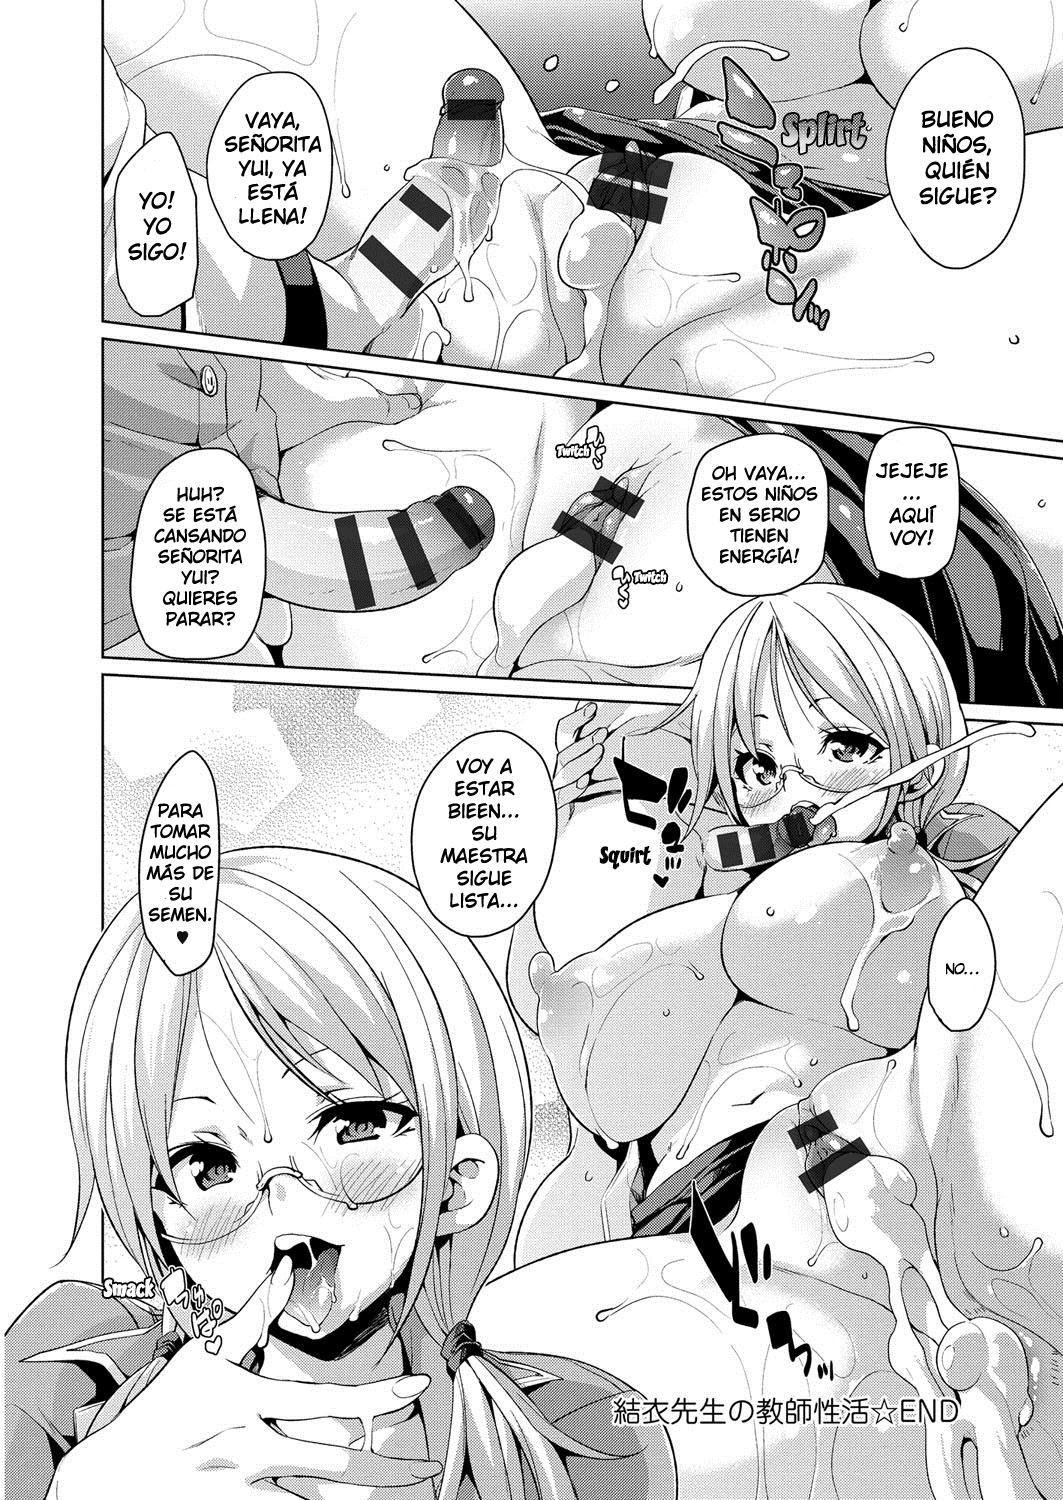 Las Actividades Sexuales Escolares de la Señorita Yui (Cark-san) - 21